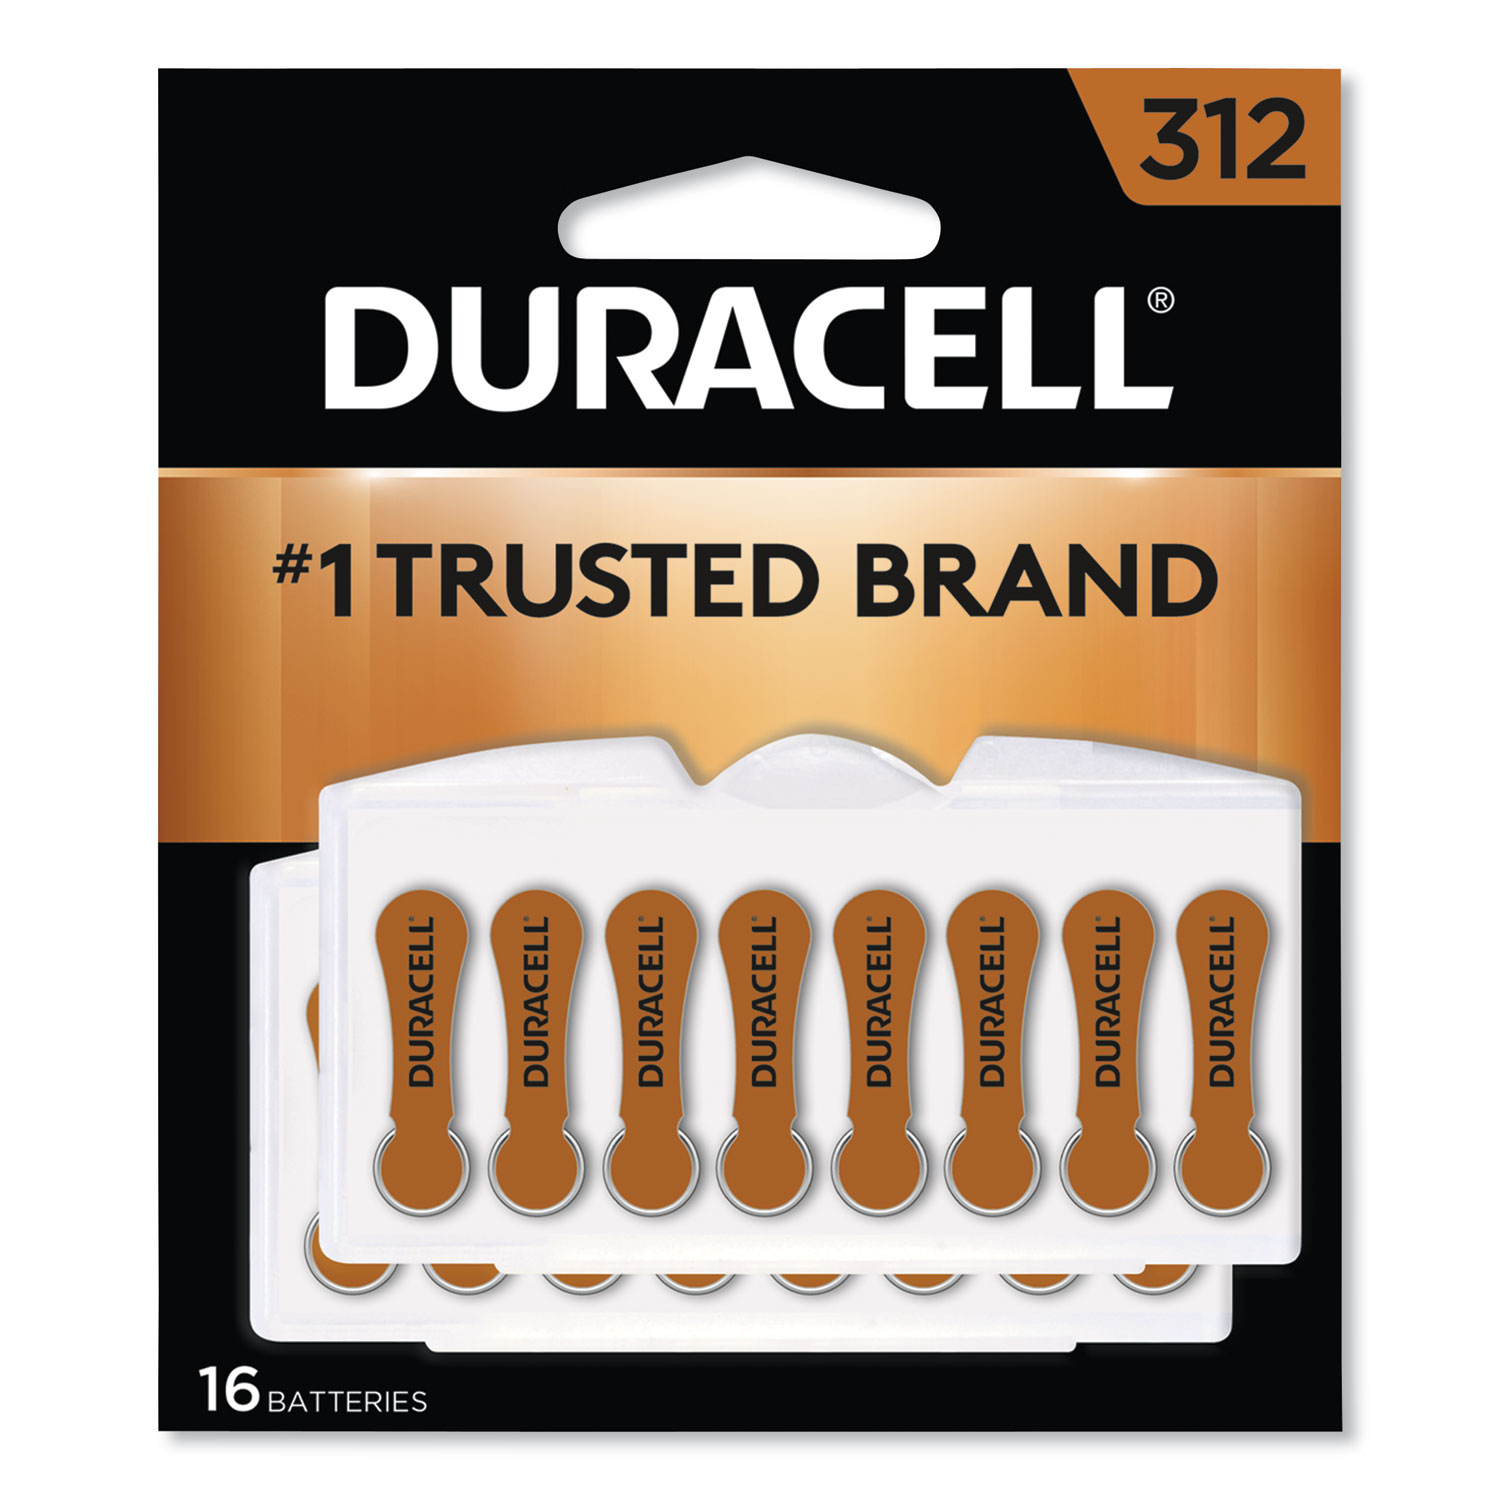  Duracell DA312B16 Hearing Aid Battery, #312, 16/Pack (DURDA312B16ZM09) 